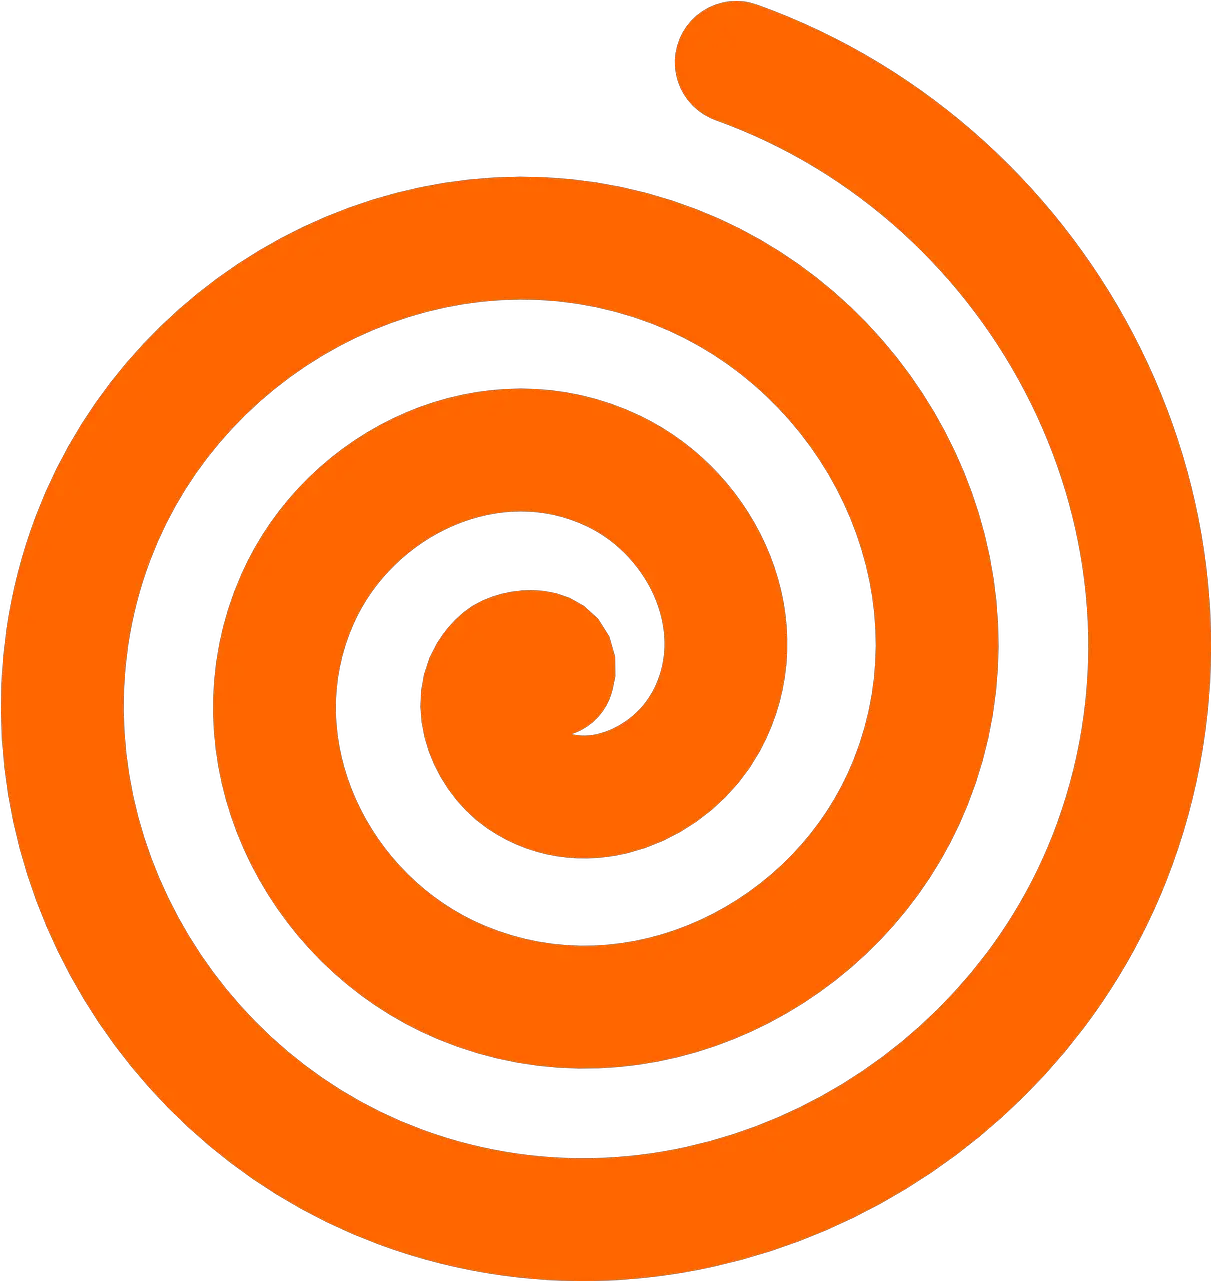 Design Swirl Orange Free Vector Graphic On Pixabay Orange Circle Swirl Logo Png Spiral Png